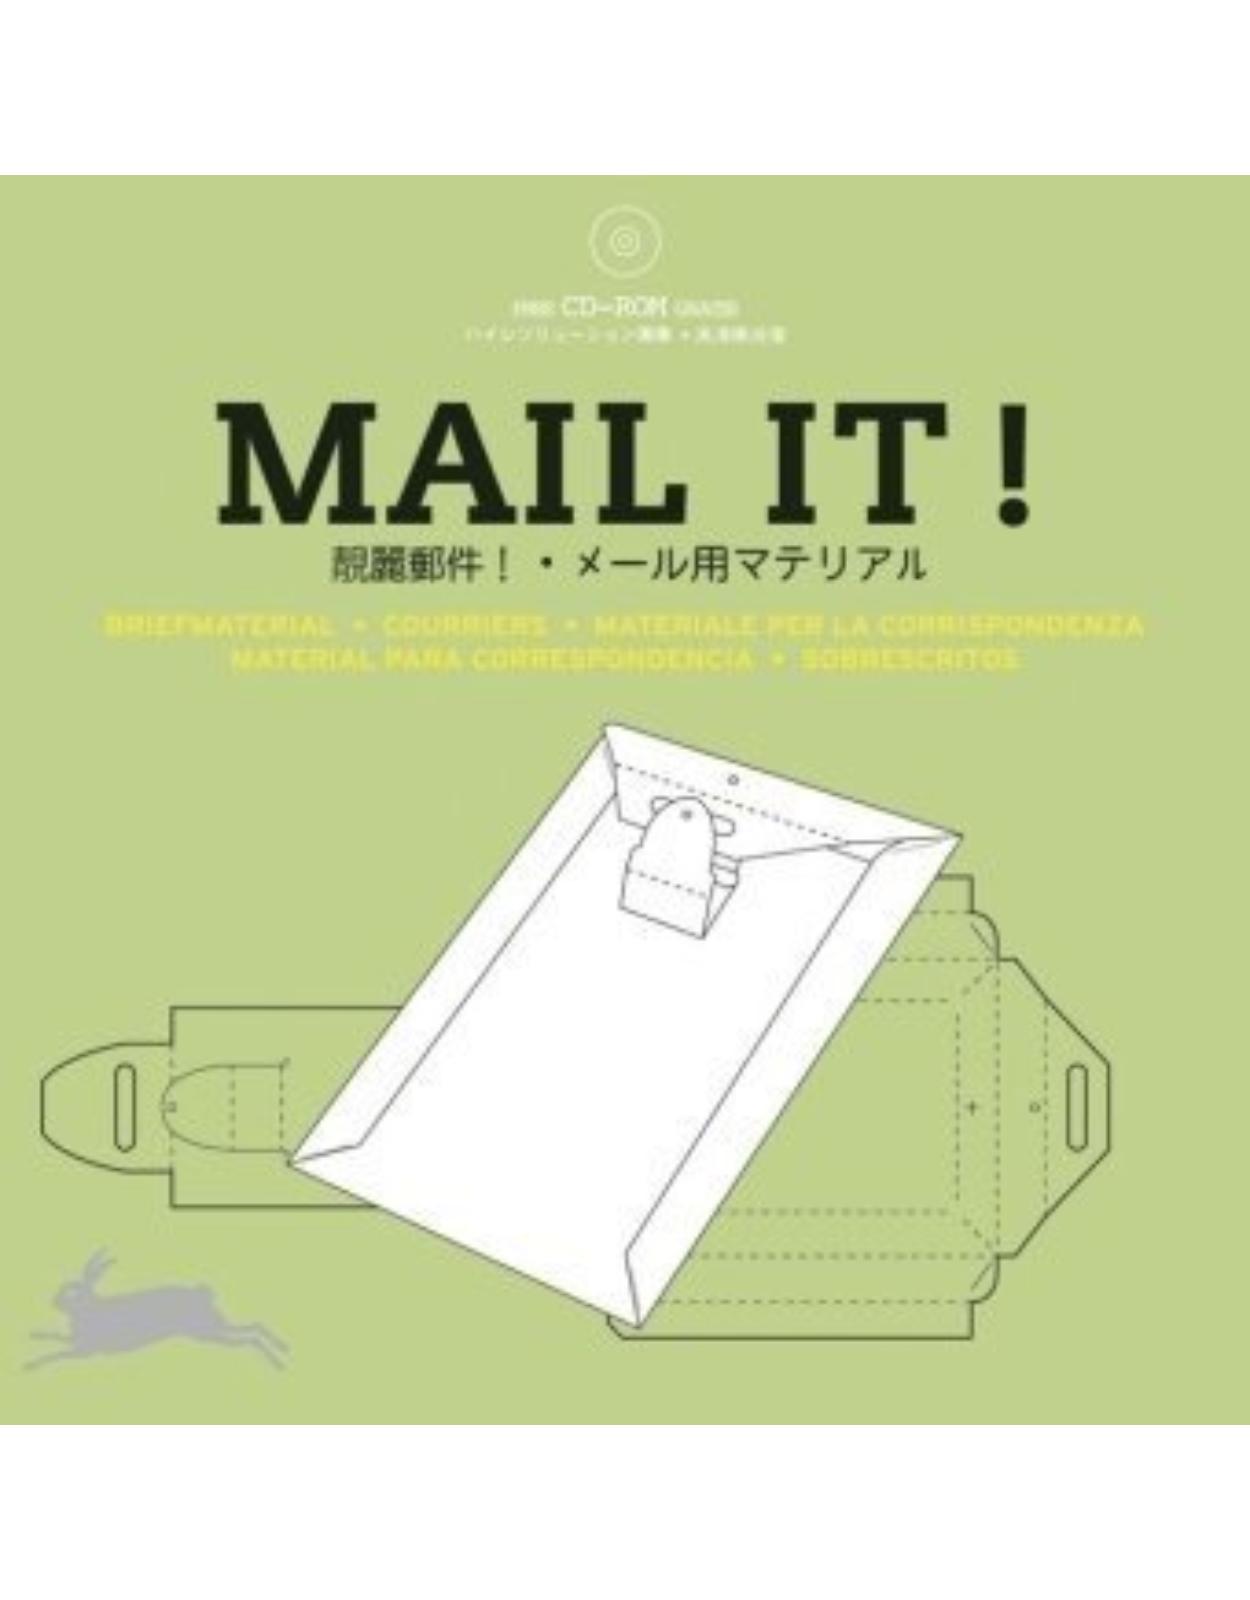 Mailt It !